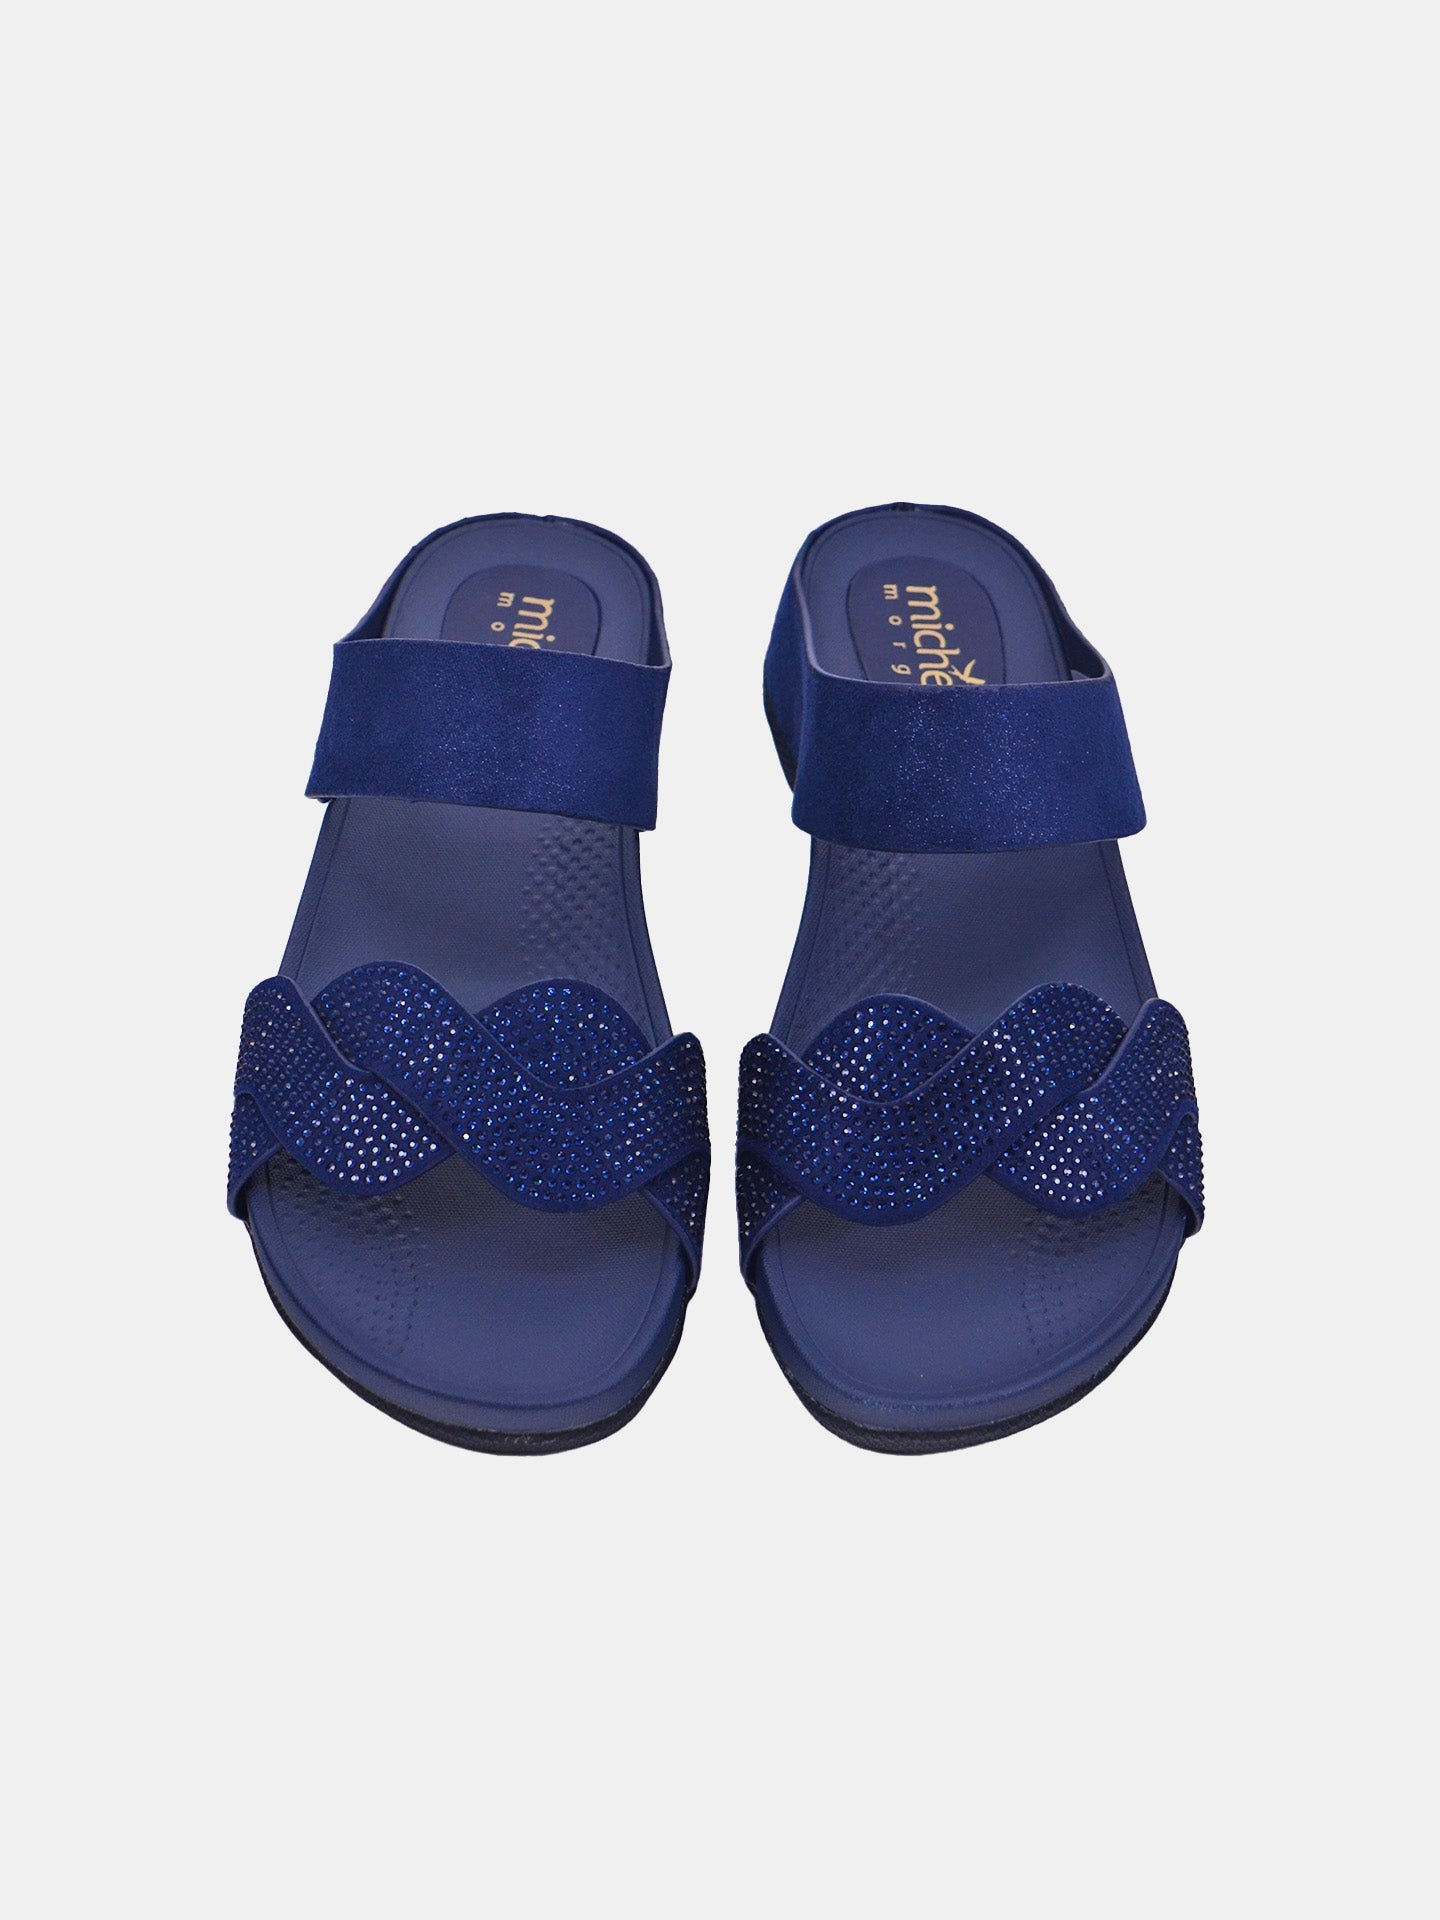 Michelle Morgan 114RC277 Women's Sandals #color_Navy